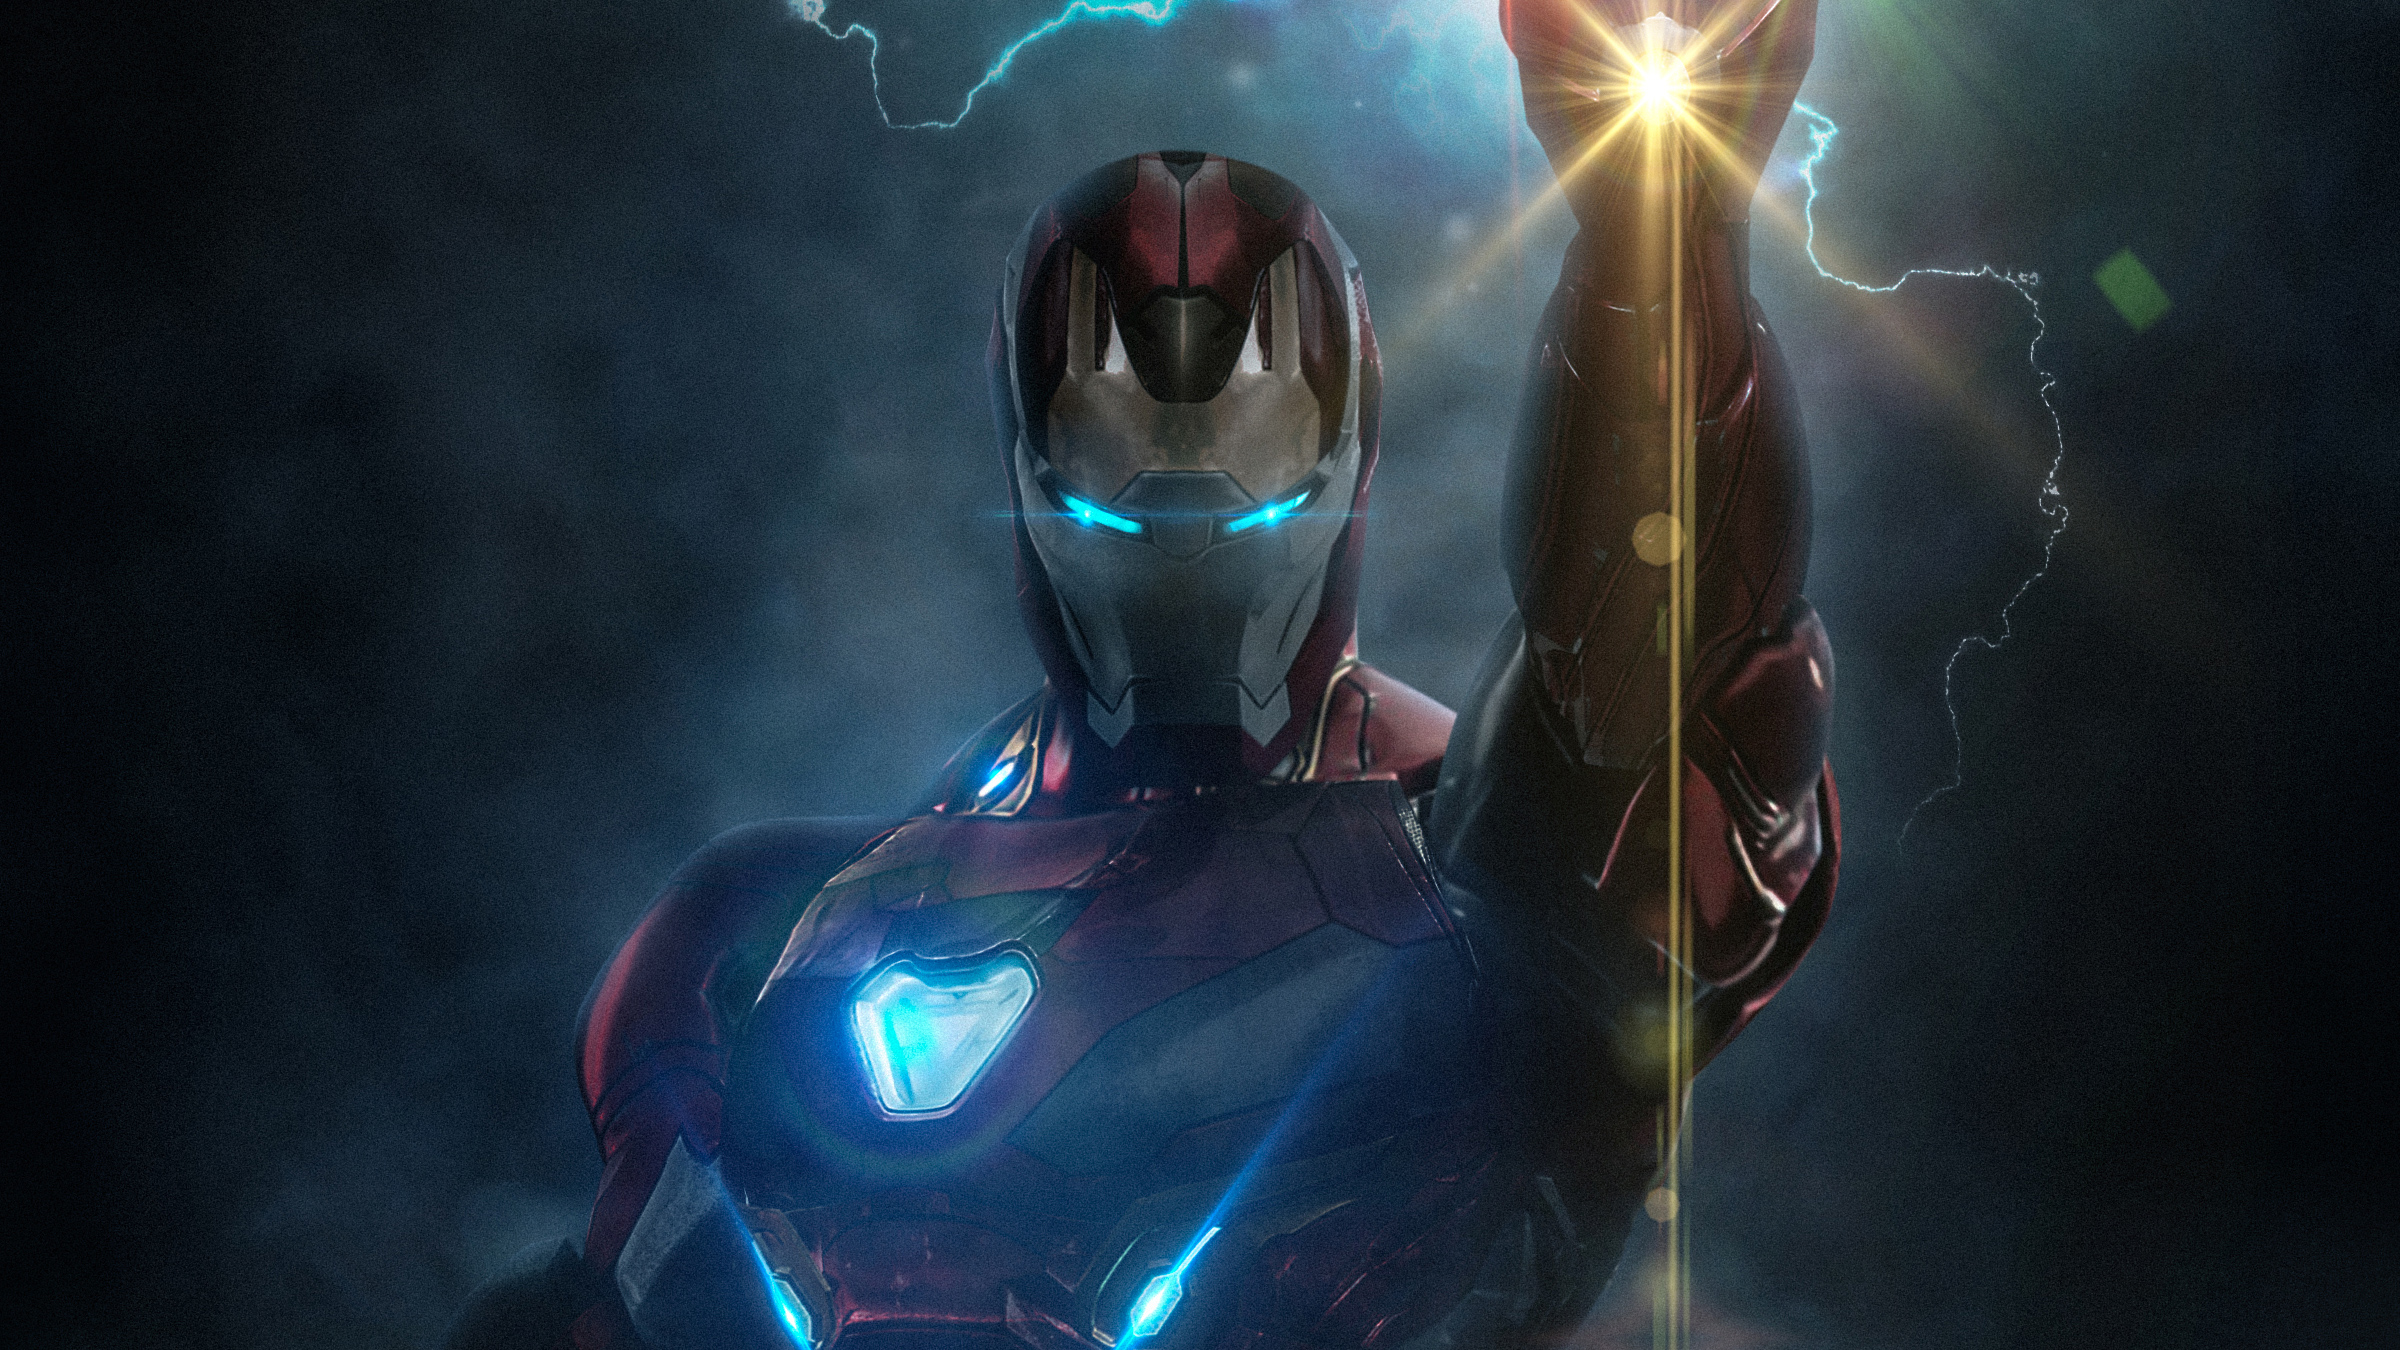 tony stark, iron man, avengers endgame, the avengers, movie